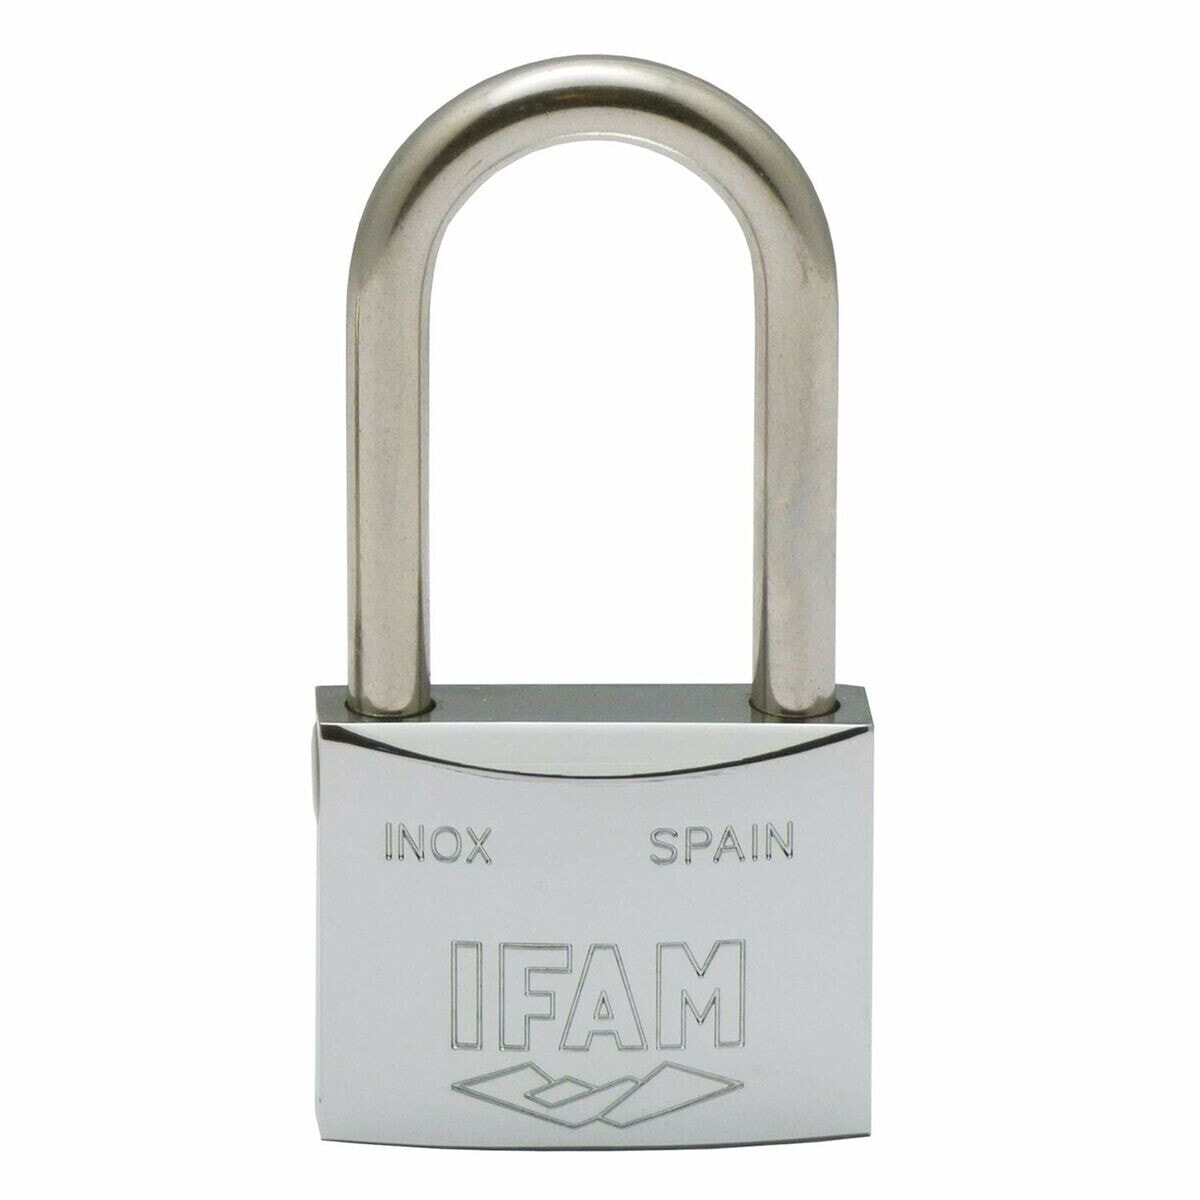 Key padlock IFAM INOX 40AL Stainless steel Length (40 mm)